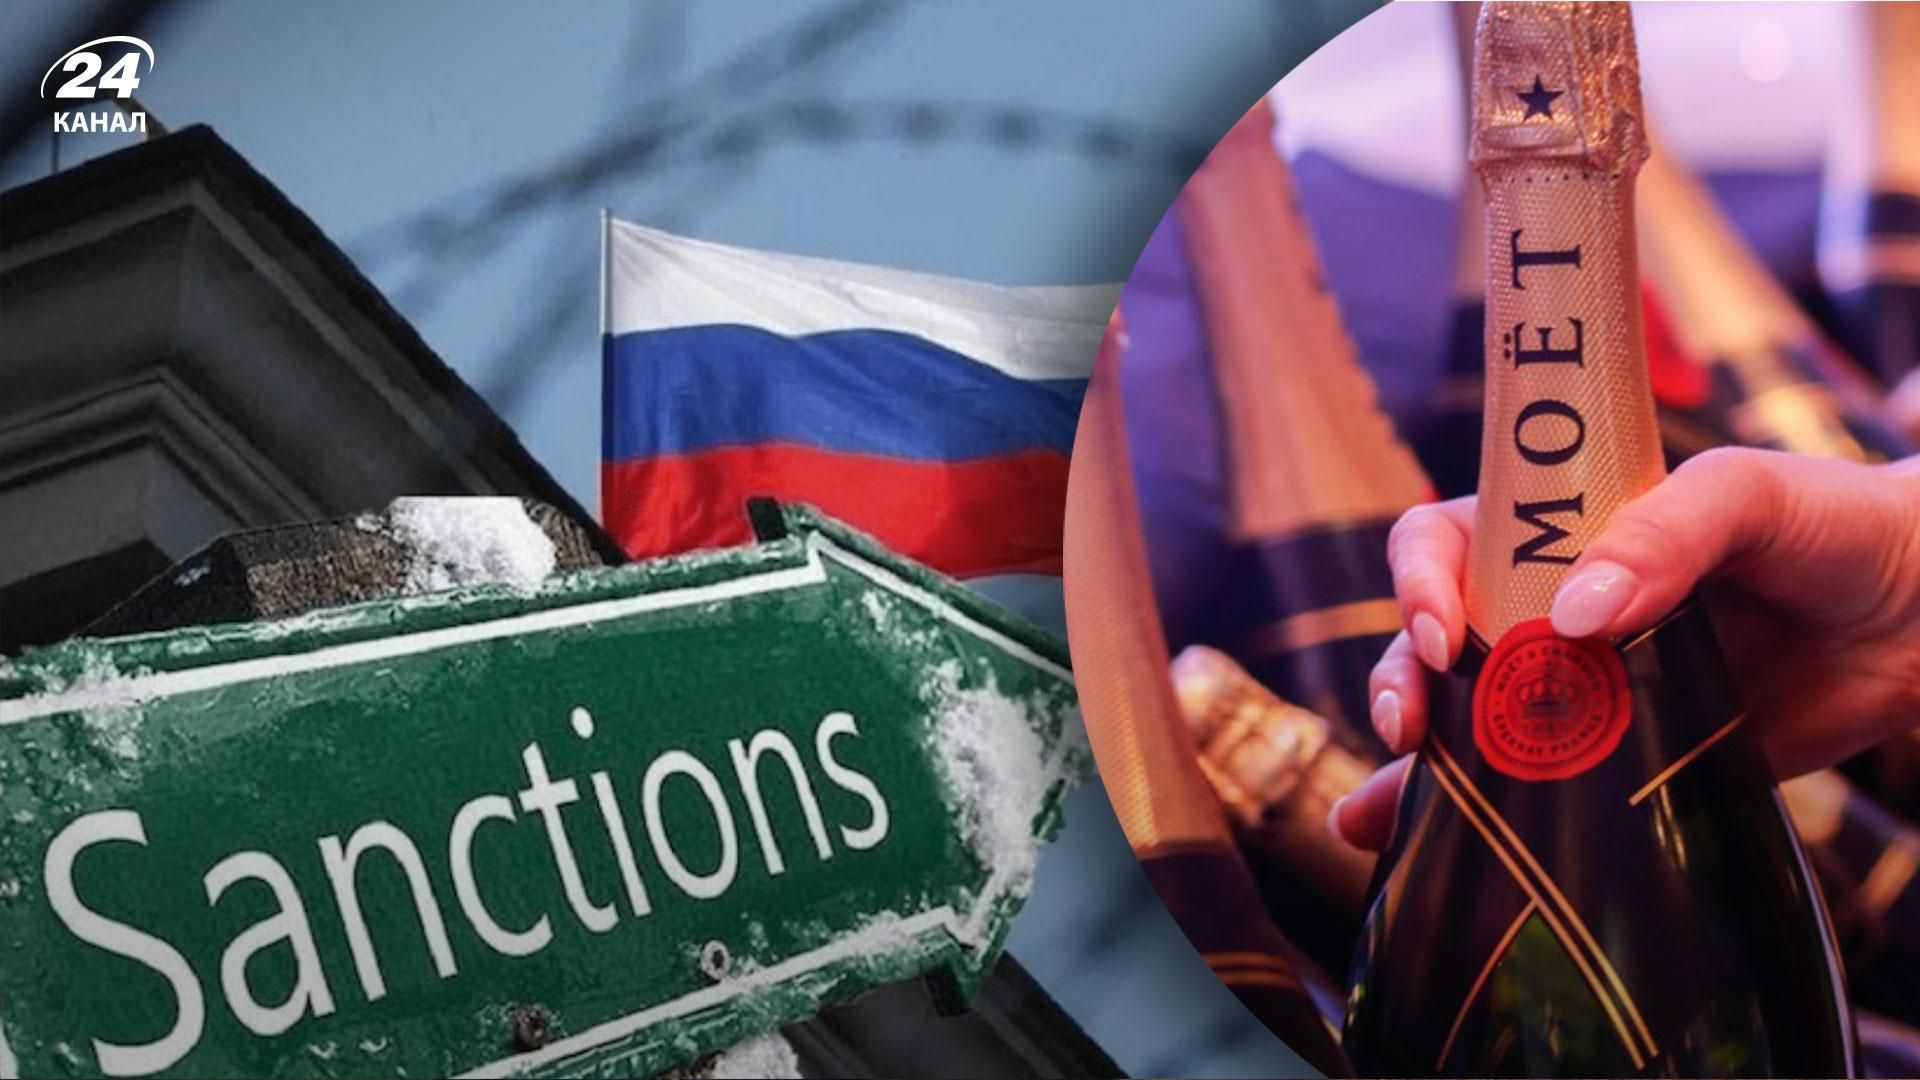 росіяни хочуть незаконно імпортувати елітний західний алкоголь